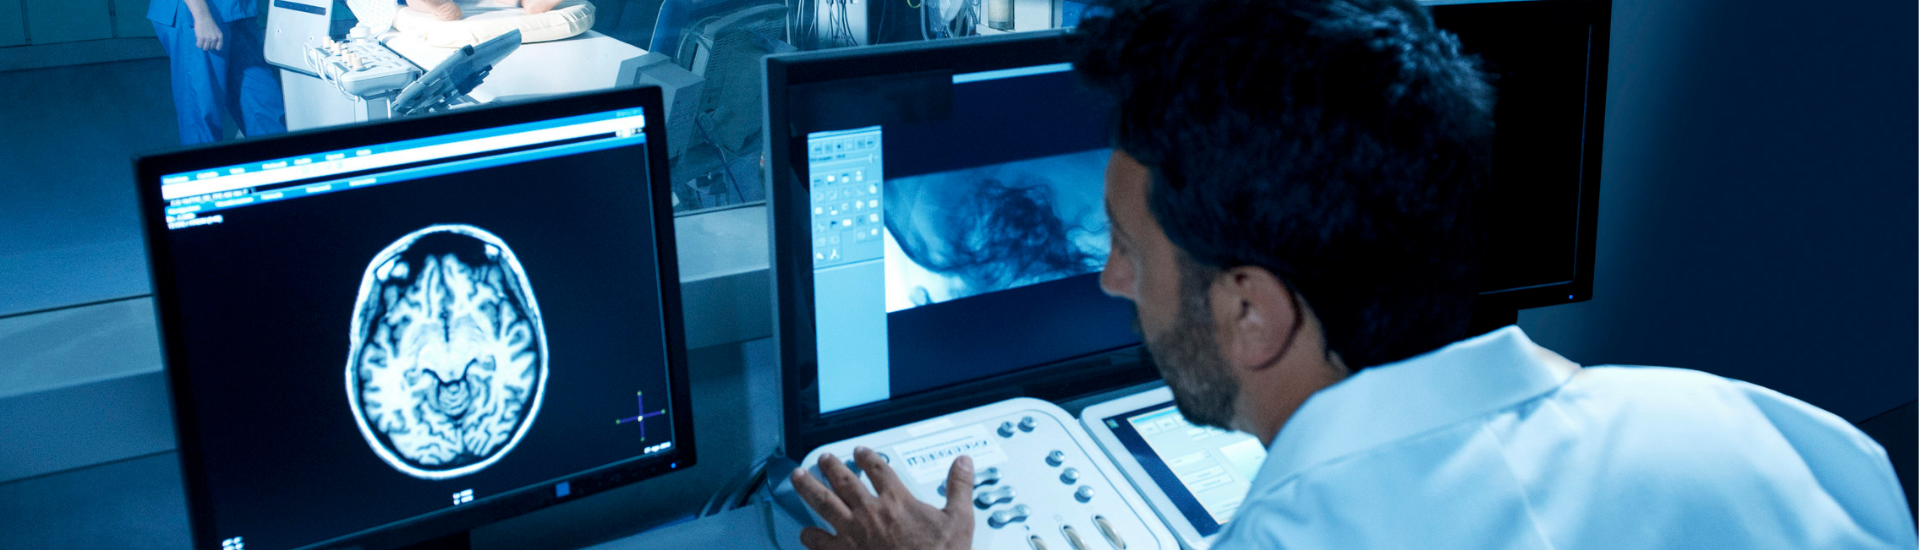 Diagnostica per Immagini Medical Group - Formato Desktop